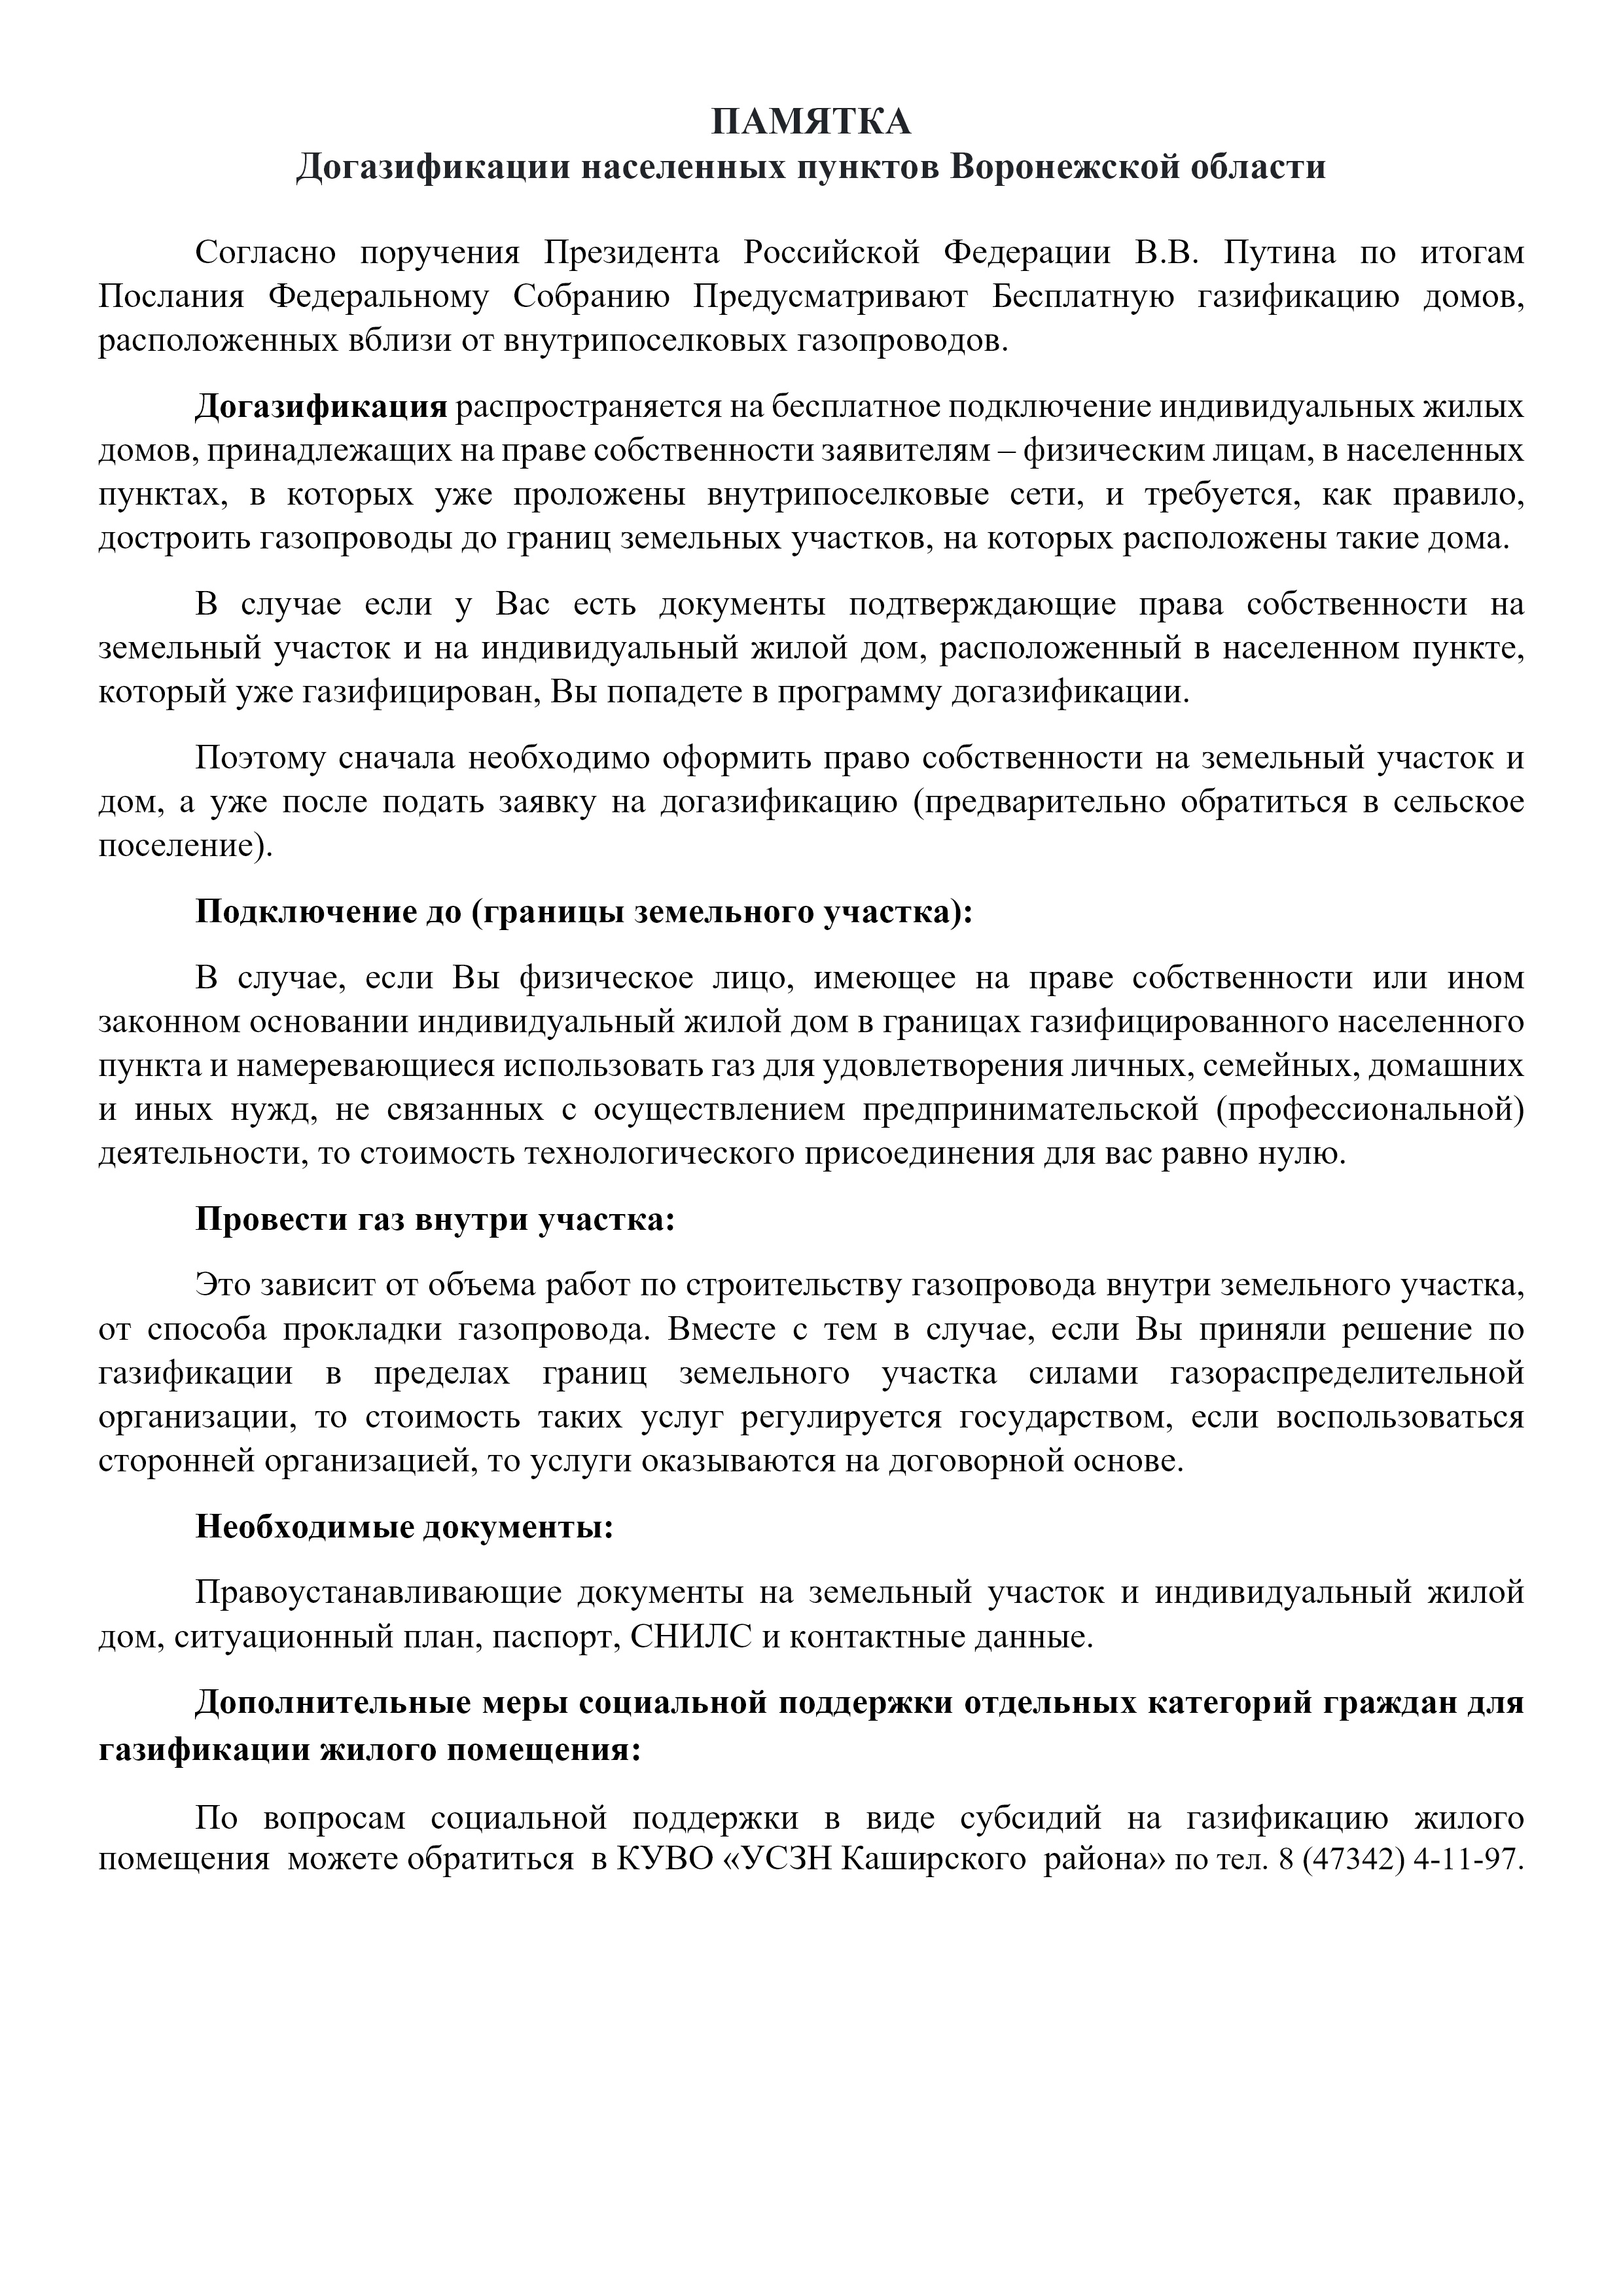 ПАМЯТКА Догазификации населенных пунктов Воронежской области.